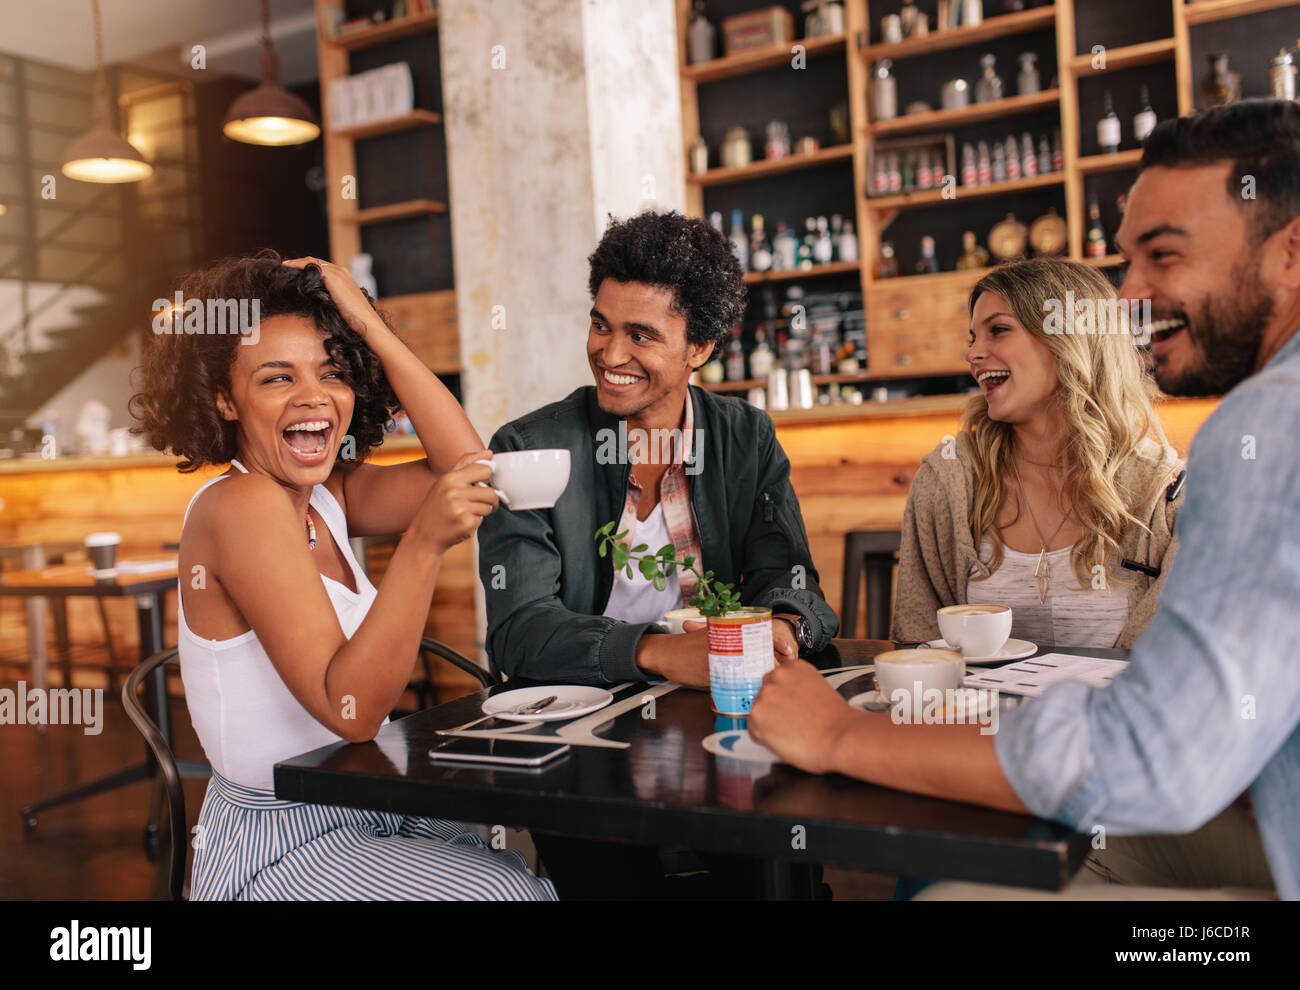 Heureux les jeunes gens assis autour de cafe table et boire du café. Groupe multiracial de friends enjoying coffee ensemble dans un restaurant. Banque D'Images